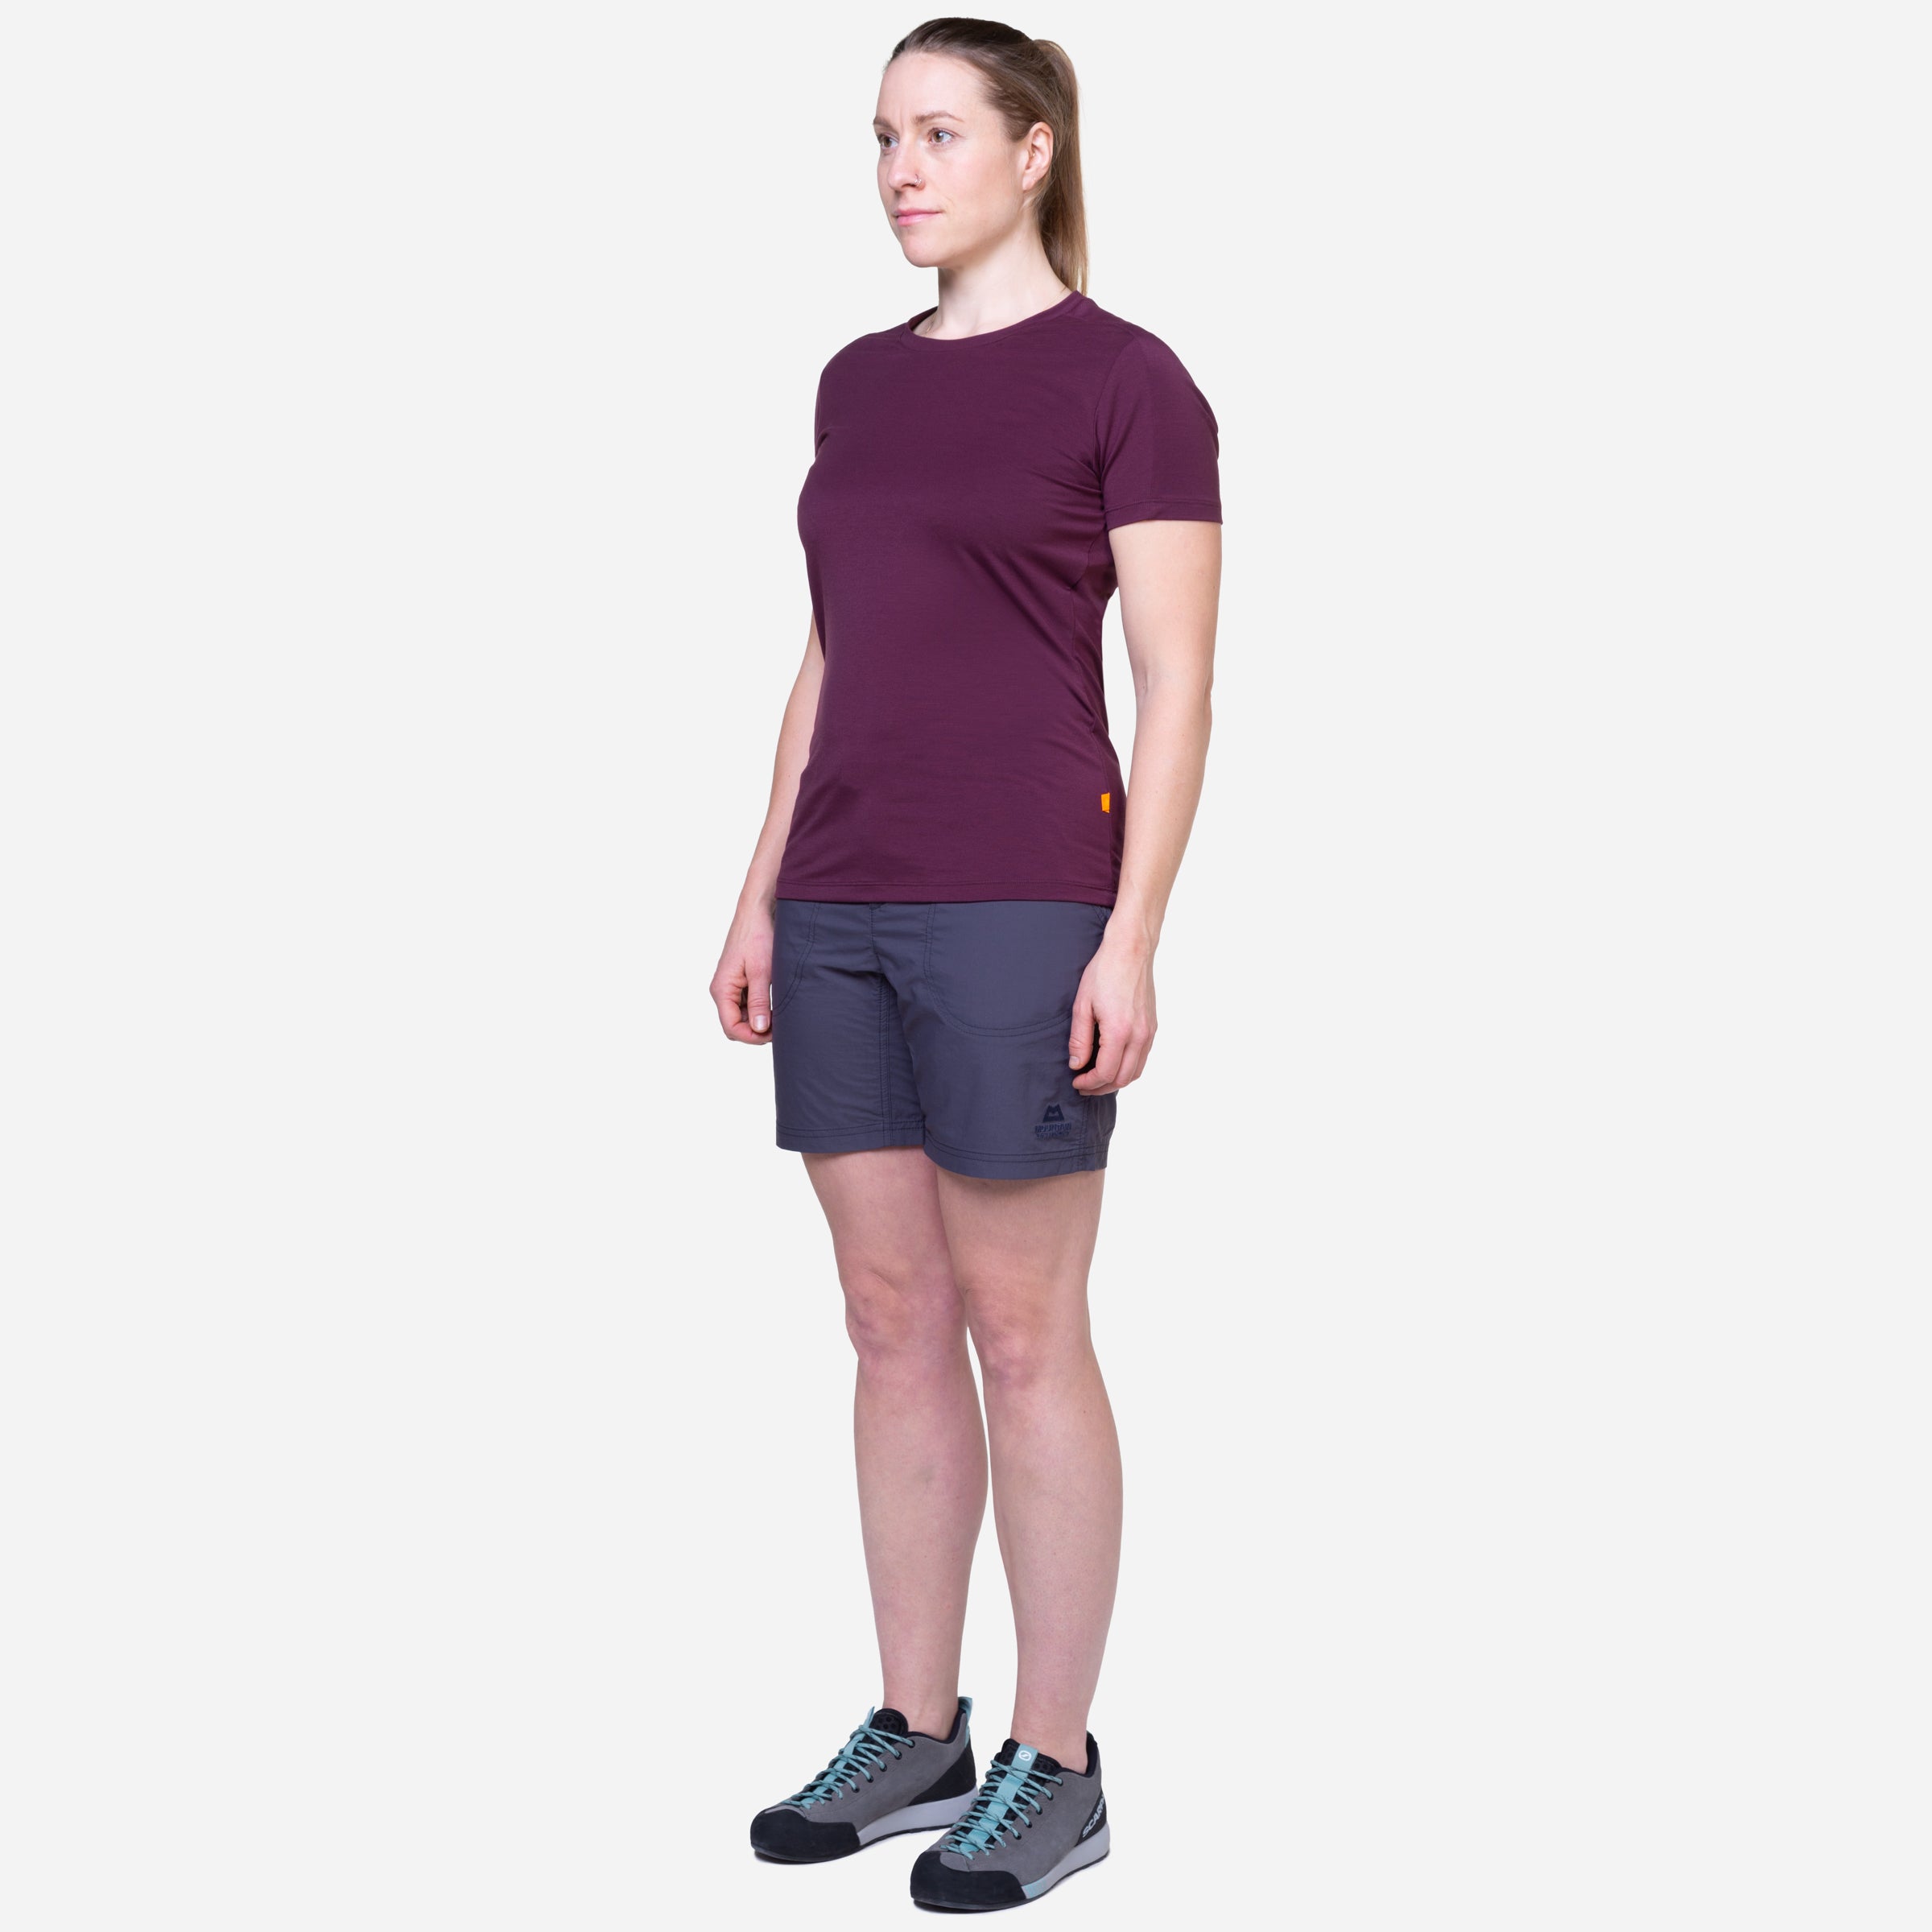 Women's Sprint Shorts - Merlot – Understand the Grind